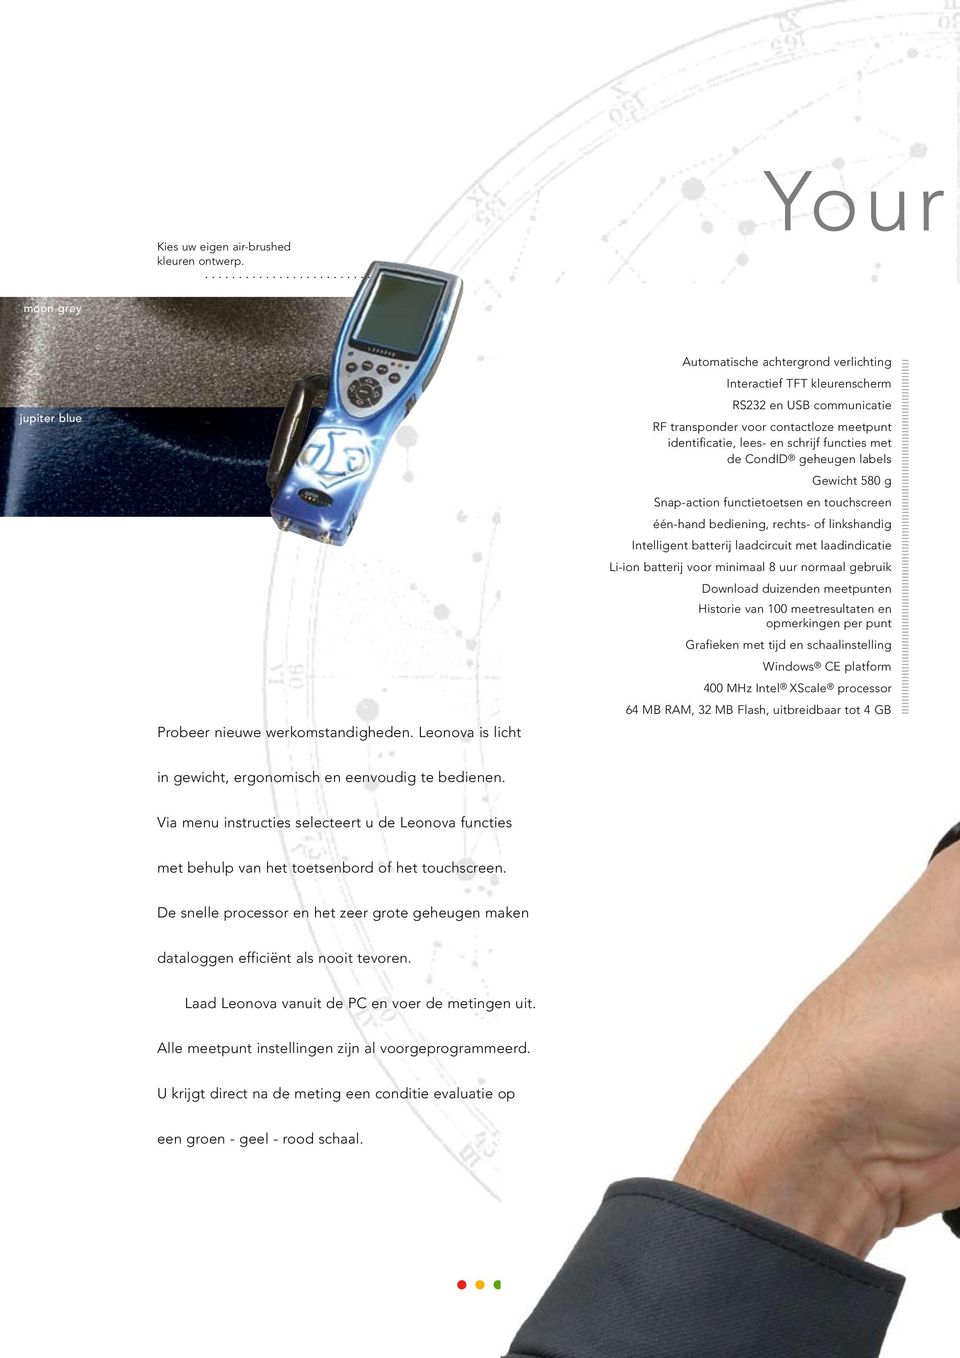 CondID geheugen labels Gewicht 580 g Snap-action functietoetsen en touchscreen één-hand bediening, rechts- of linkshandig Intelligent batterij laadcircuit met laadindicatie Li-ion batterij voor